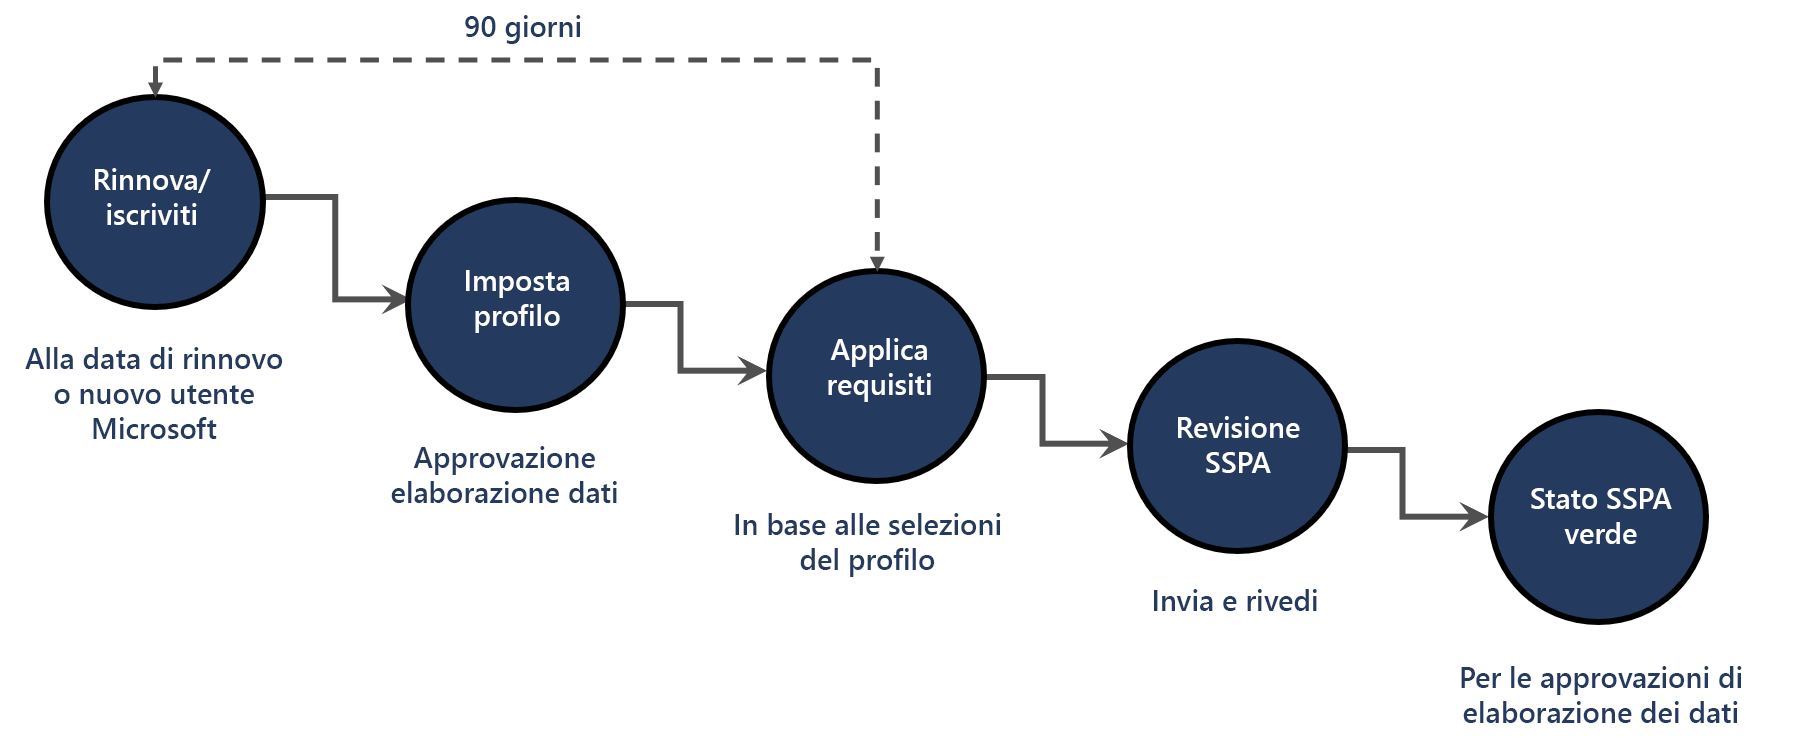 Un flusso di lavoro che illustra in dettaglio il processo di registrazione SSPA di seguito illustrato.